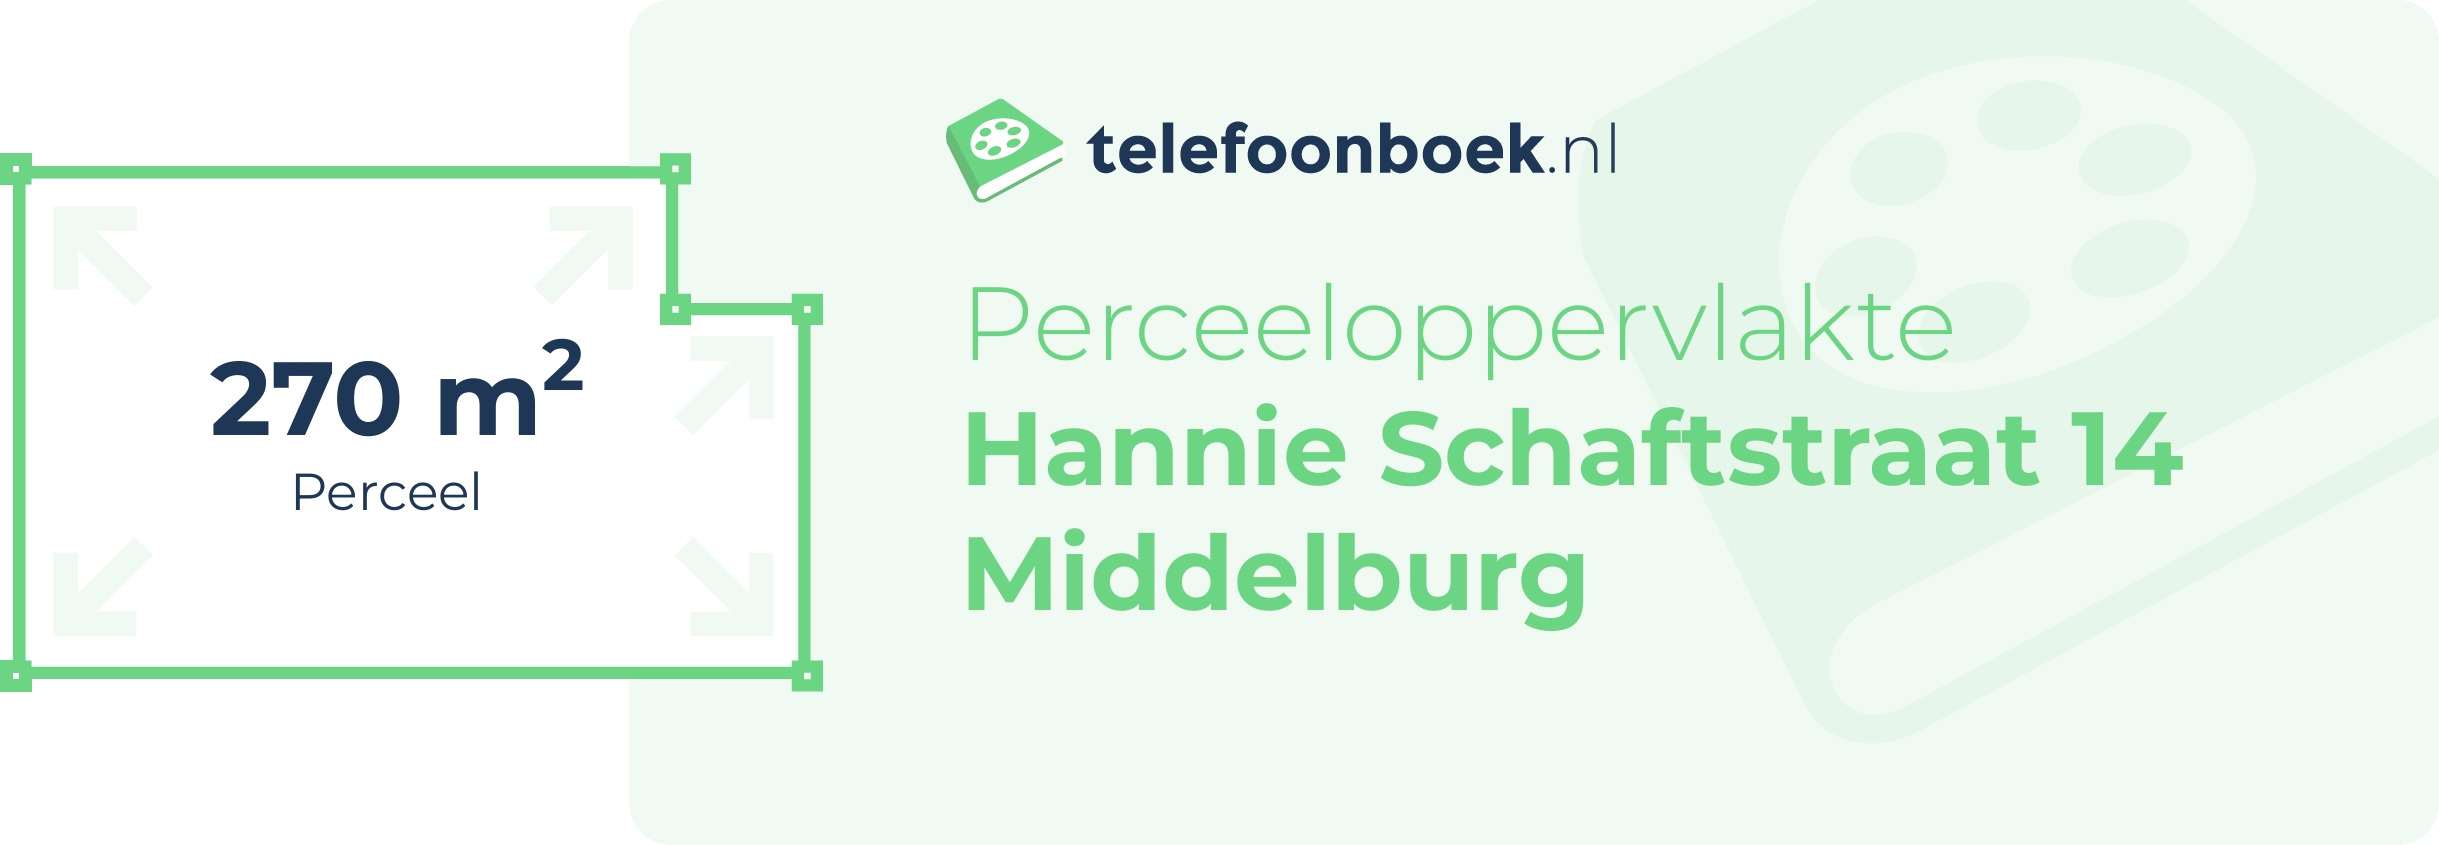 Perceeloppervlakte Hannie Schaftstraat 14 Middelburg